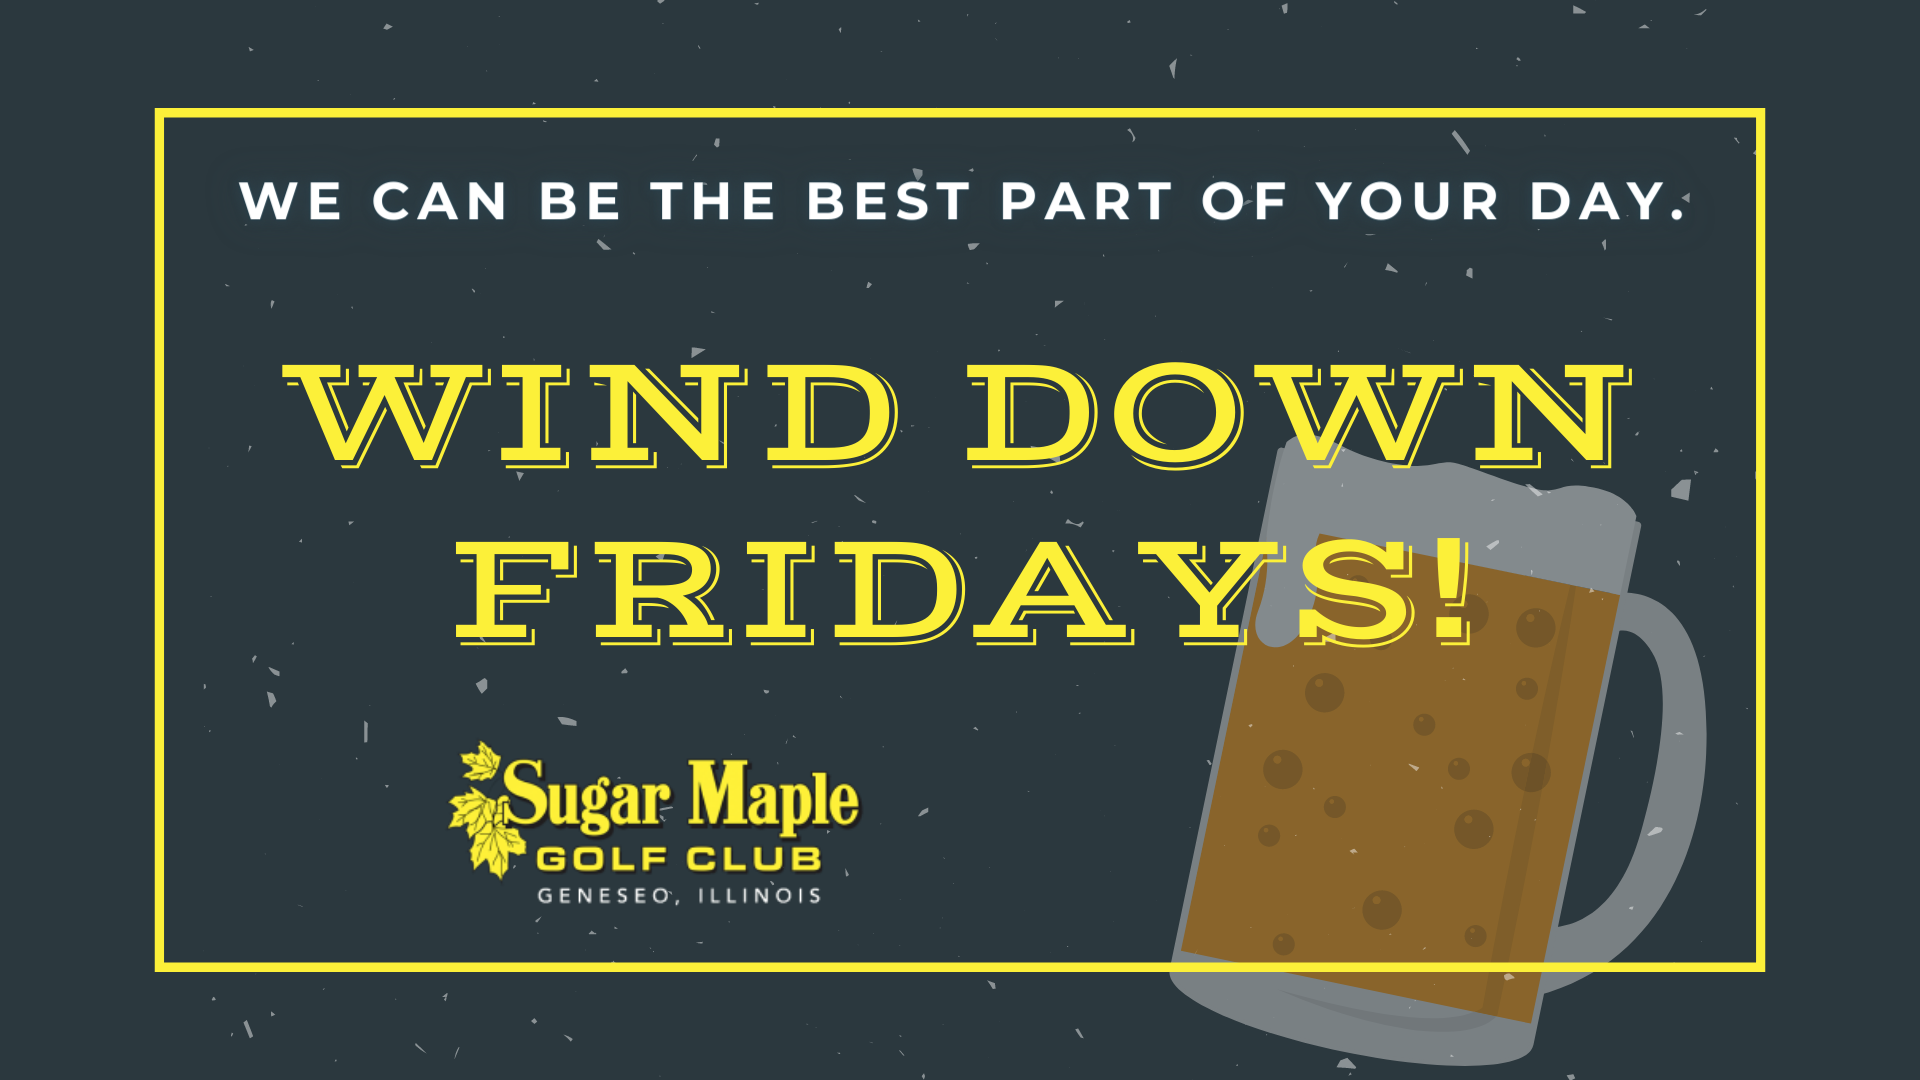 Sugar Maple Wind Down Fridays 99 fb event 1